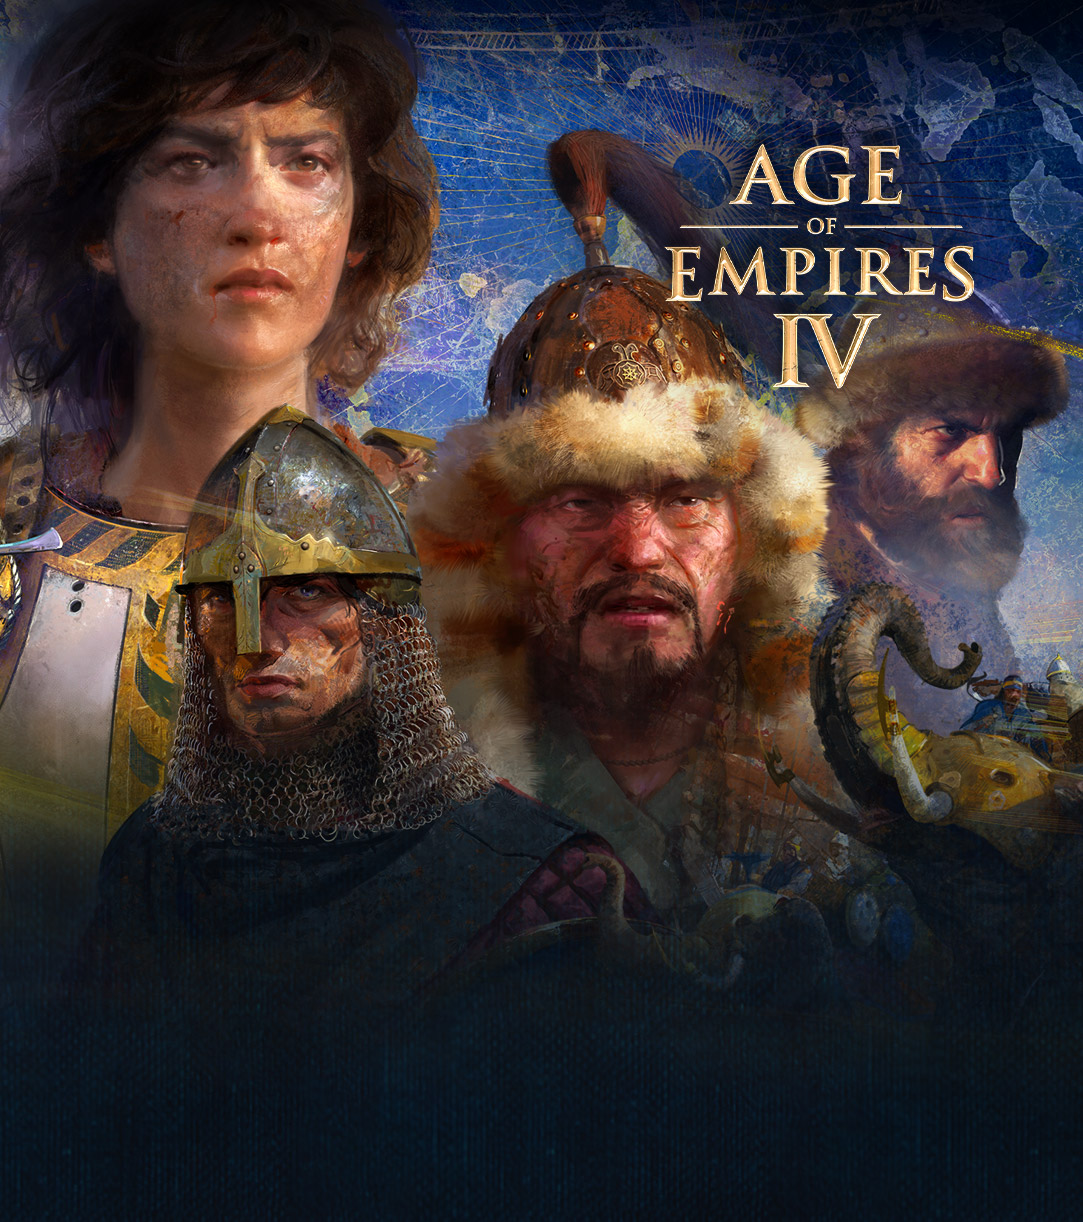 Age of Empires IV. Cuatro personajes con escenas de guerra, elefantes y jinetes a su alrededor con un fondo de mapa